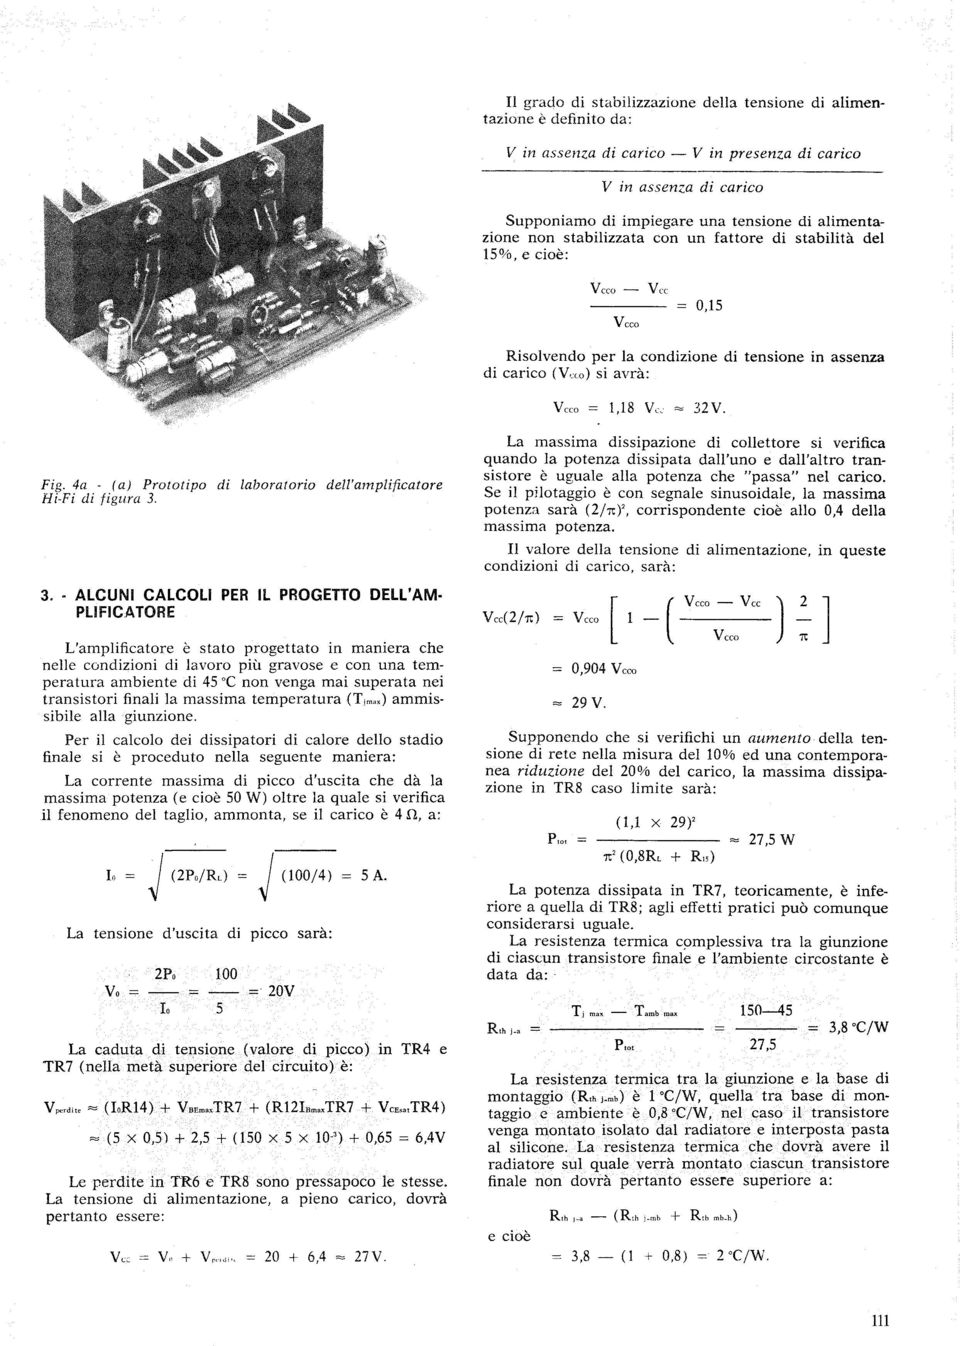 4a - (a) Prototipo di laboratorio dell'amplificatore Hi-Fi di figura 3.